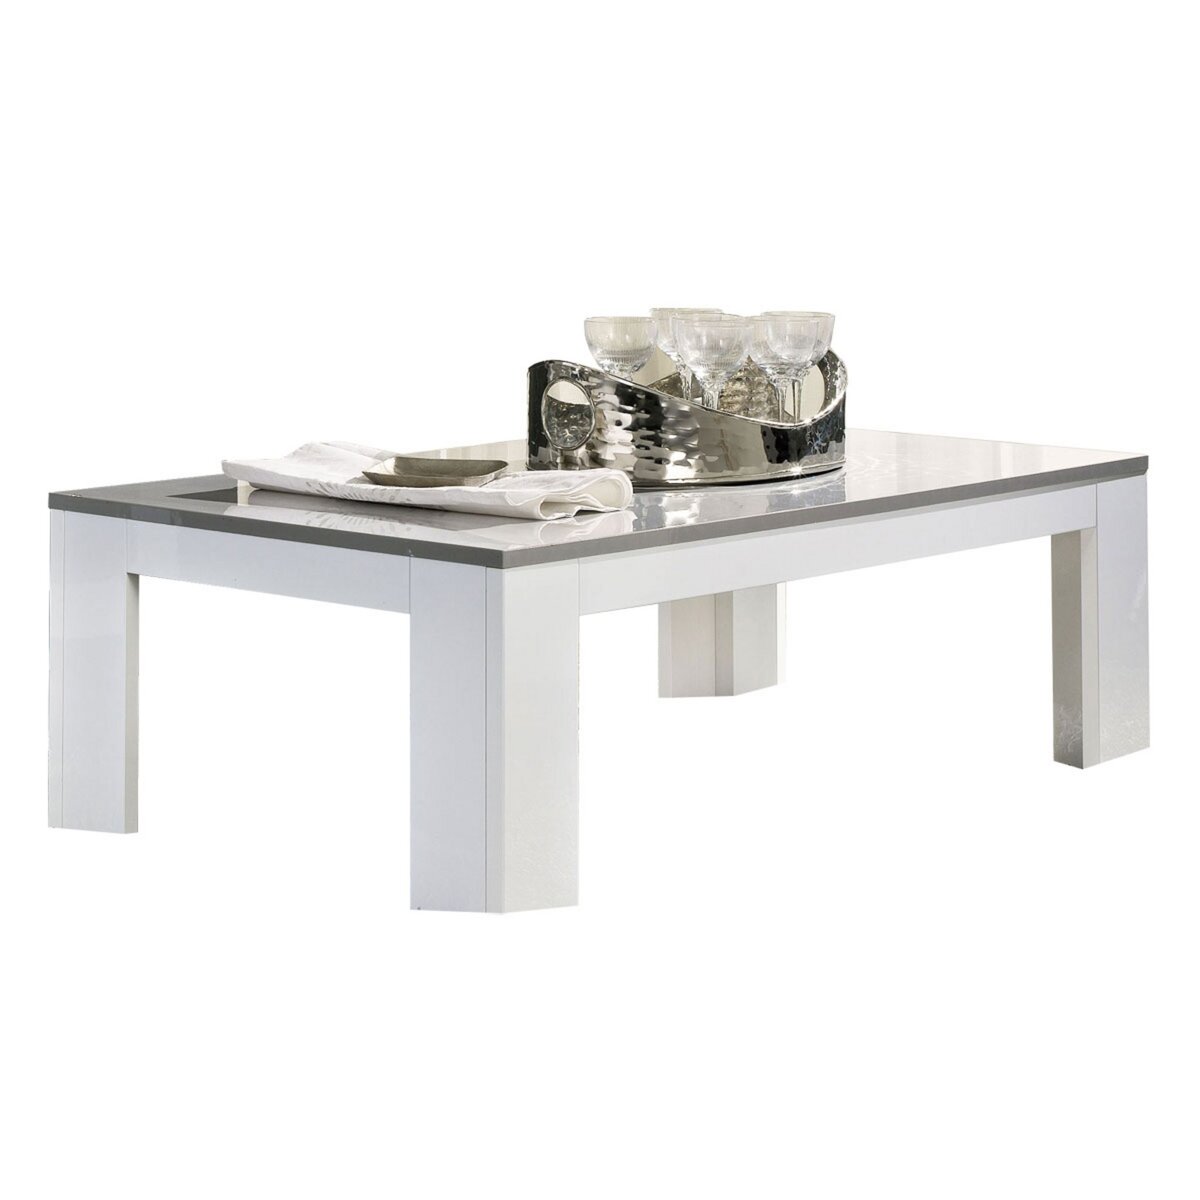 Table basse blanc et gris - LITA